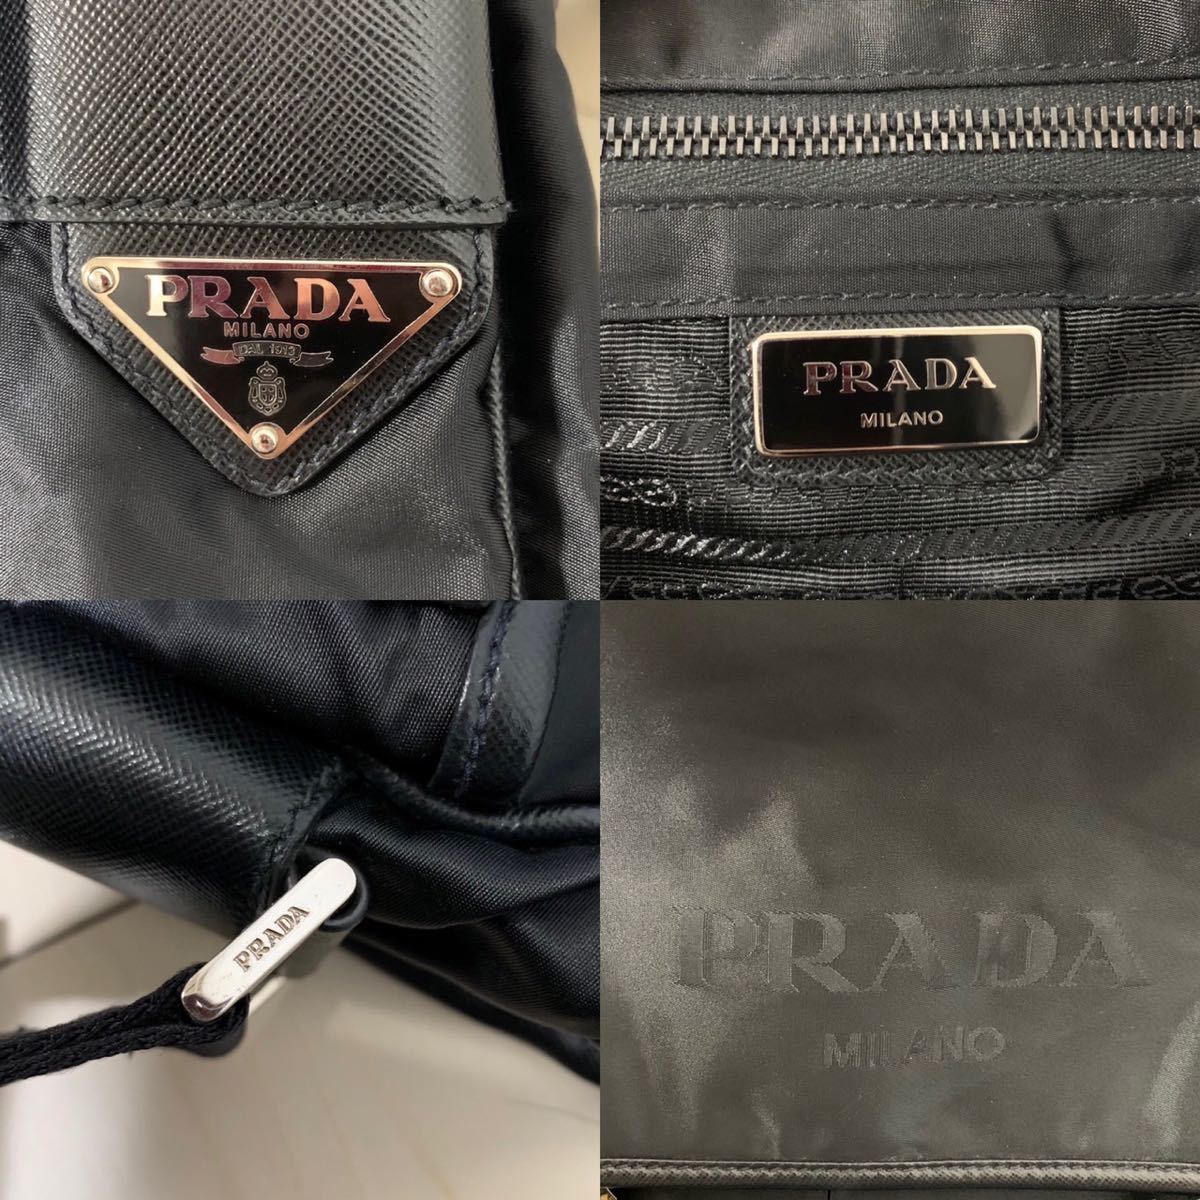 PRADA ショルダーバッグ/メッセンジャーバッグ (黒)  正規品